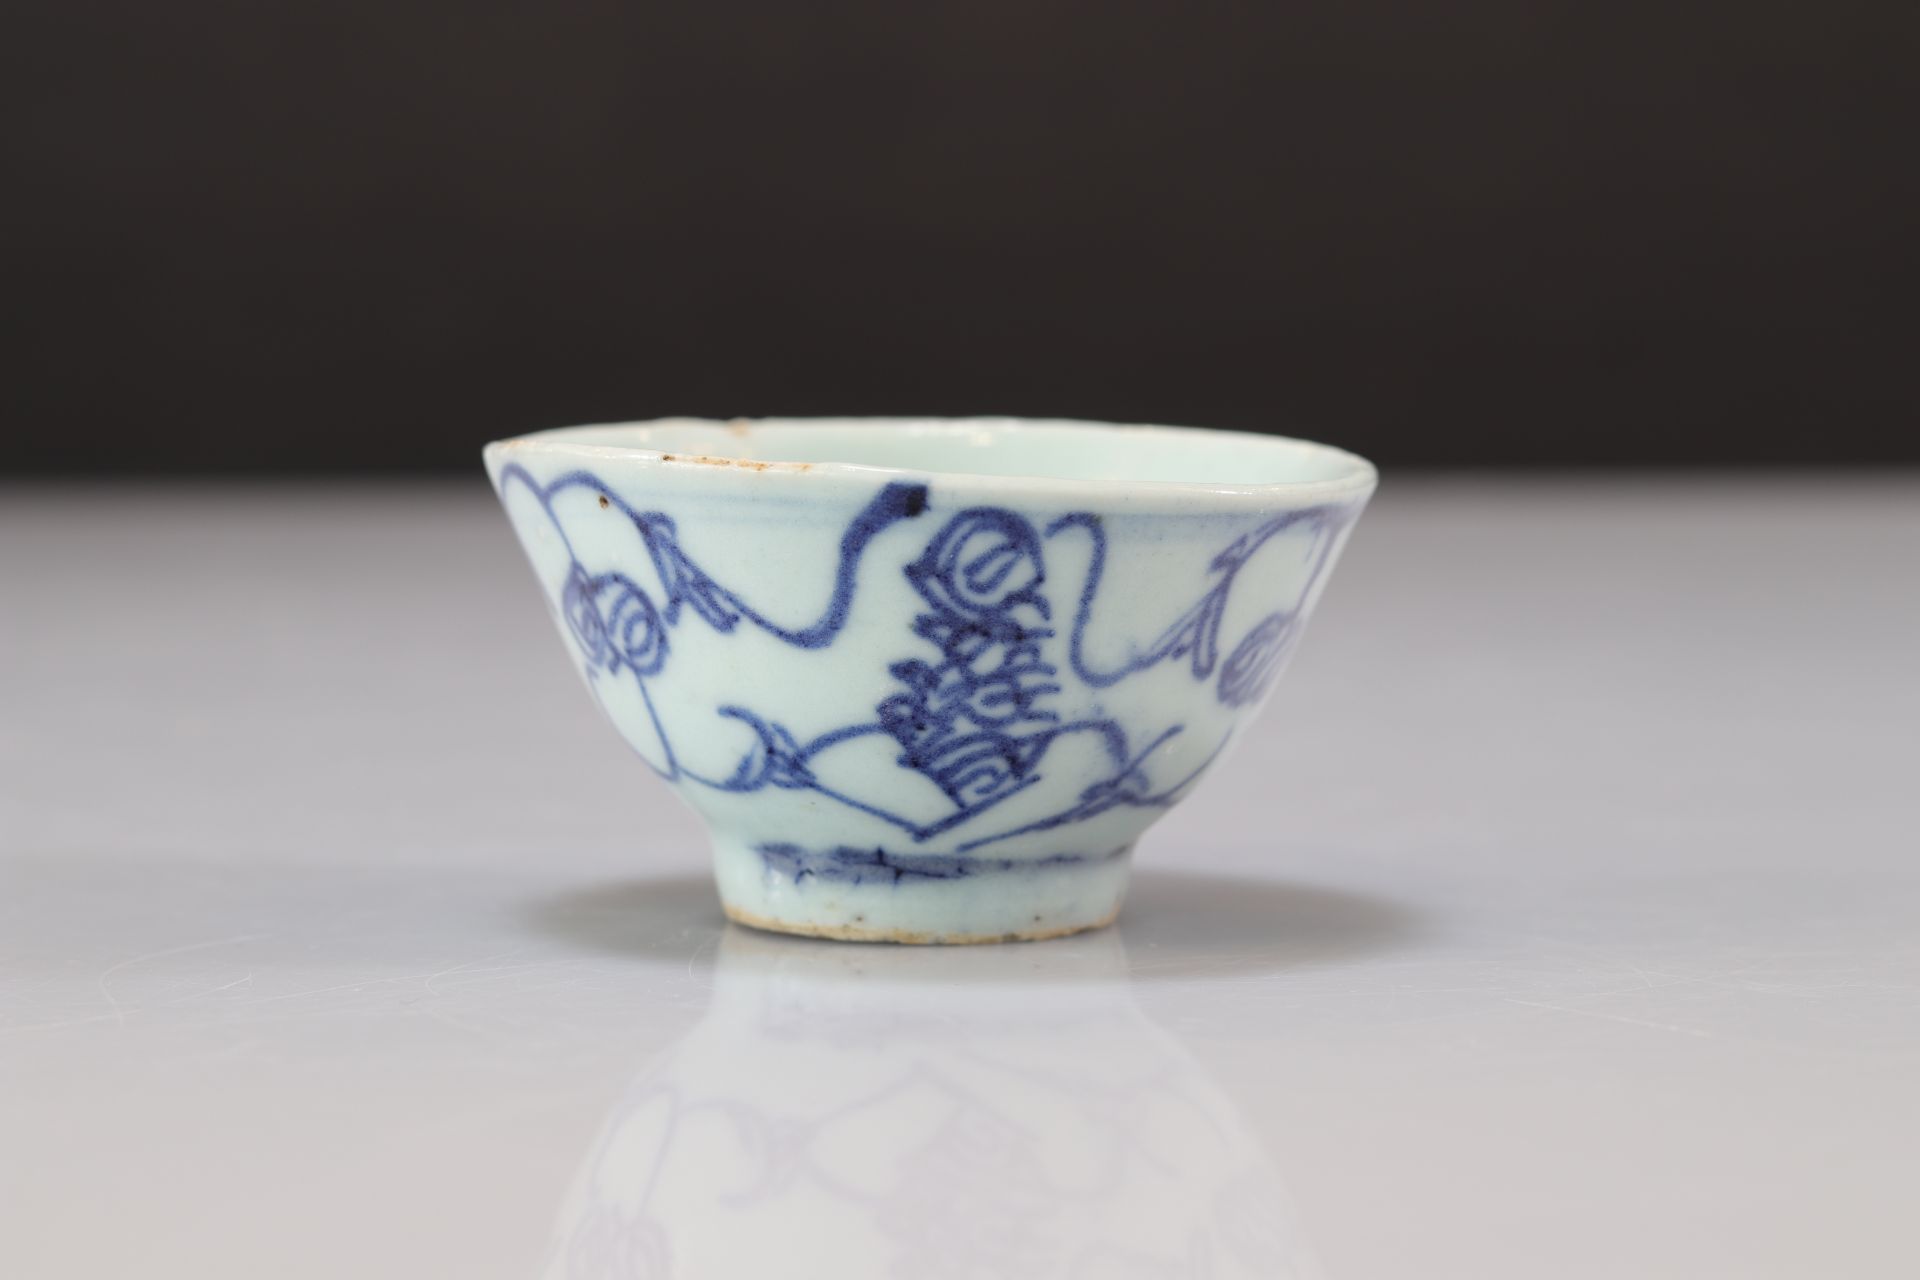 Ming period "blanc-bleu" bowl